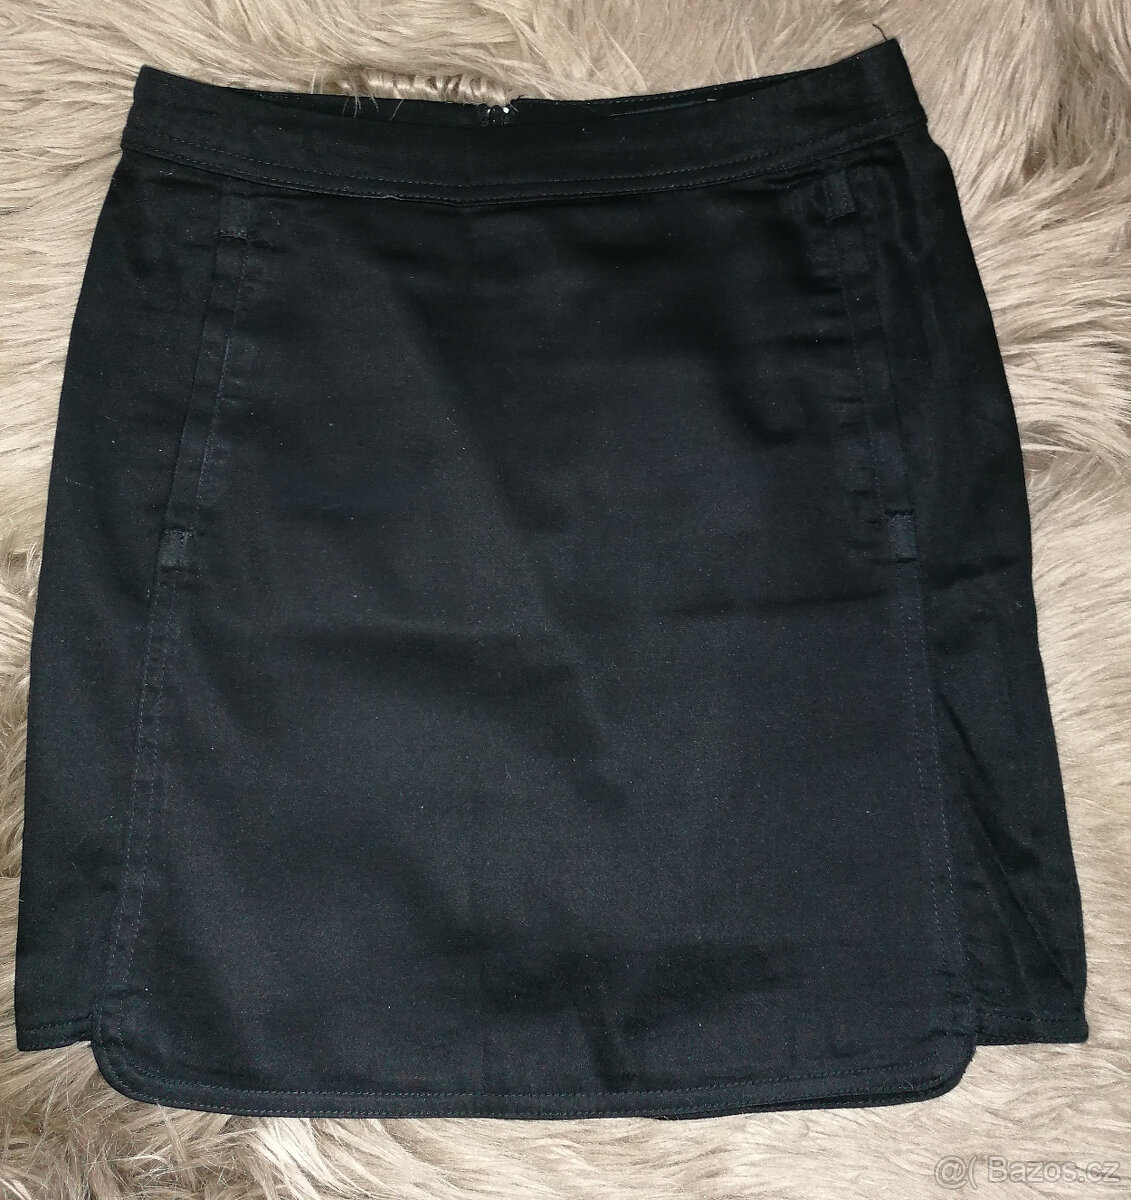 černá sukně TRN, vel. 34 (XS)